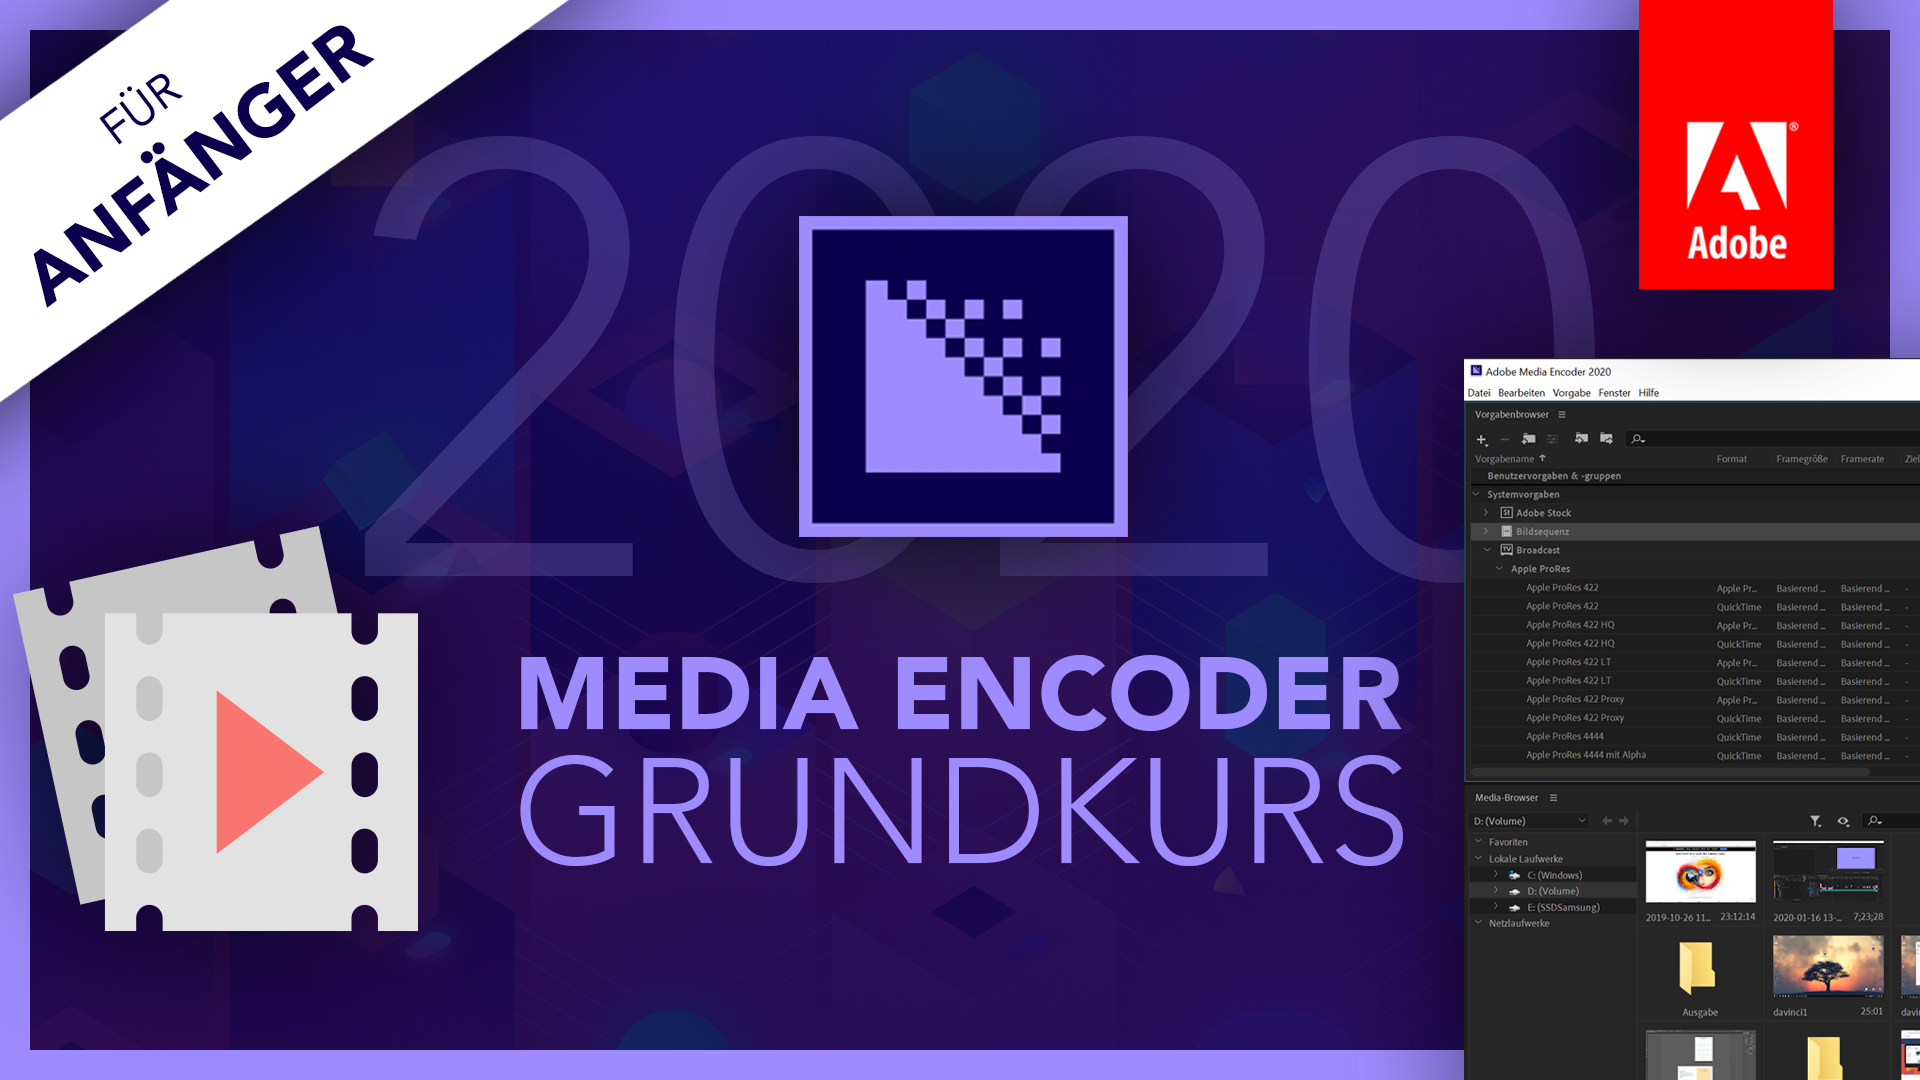 Adobe Media Encoder 2020 (Grundkurs für Anfänger) Deutsch